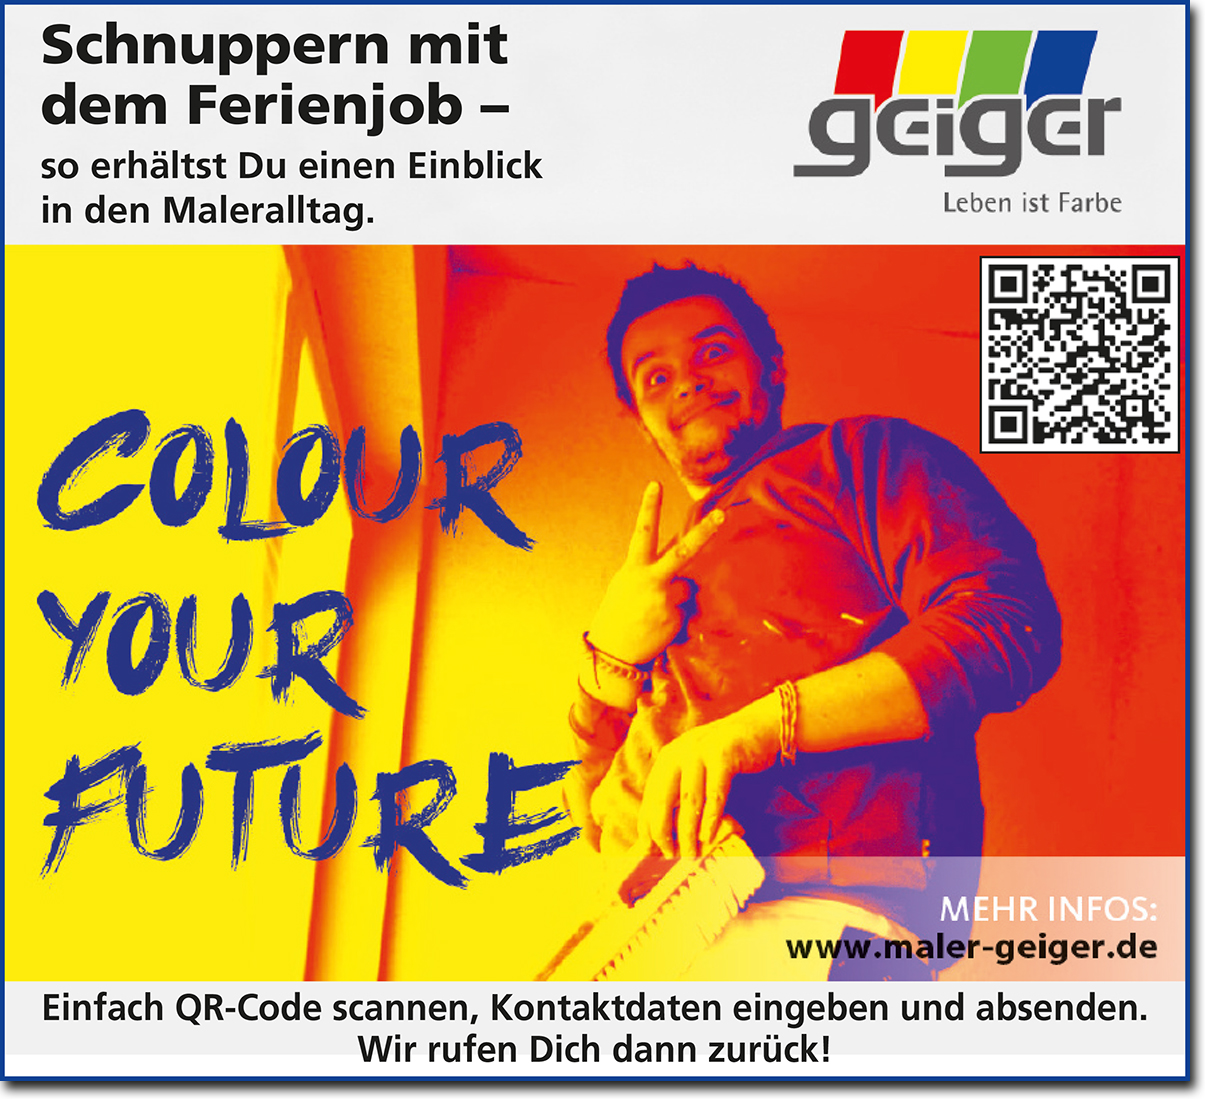 Dieter Geiger GmbH